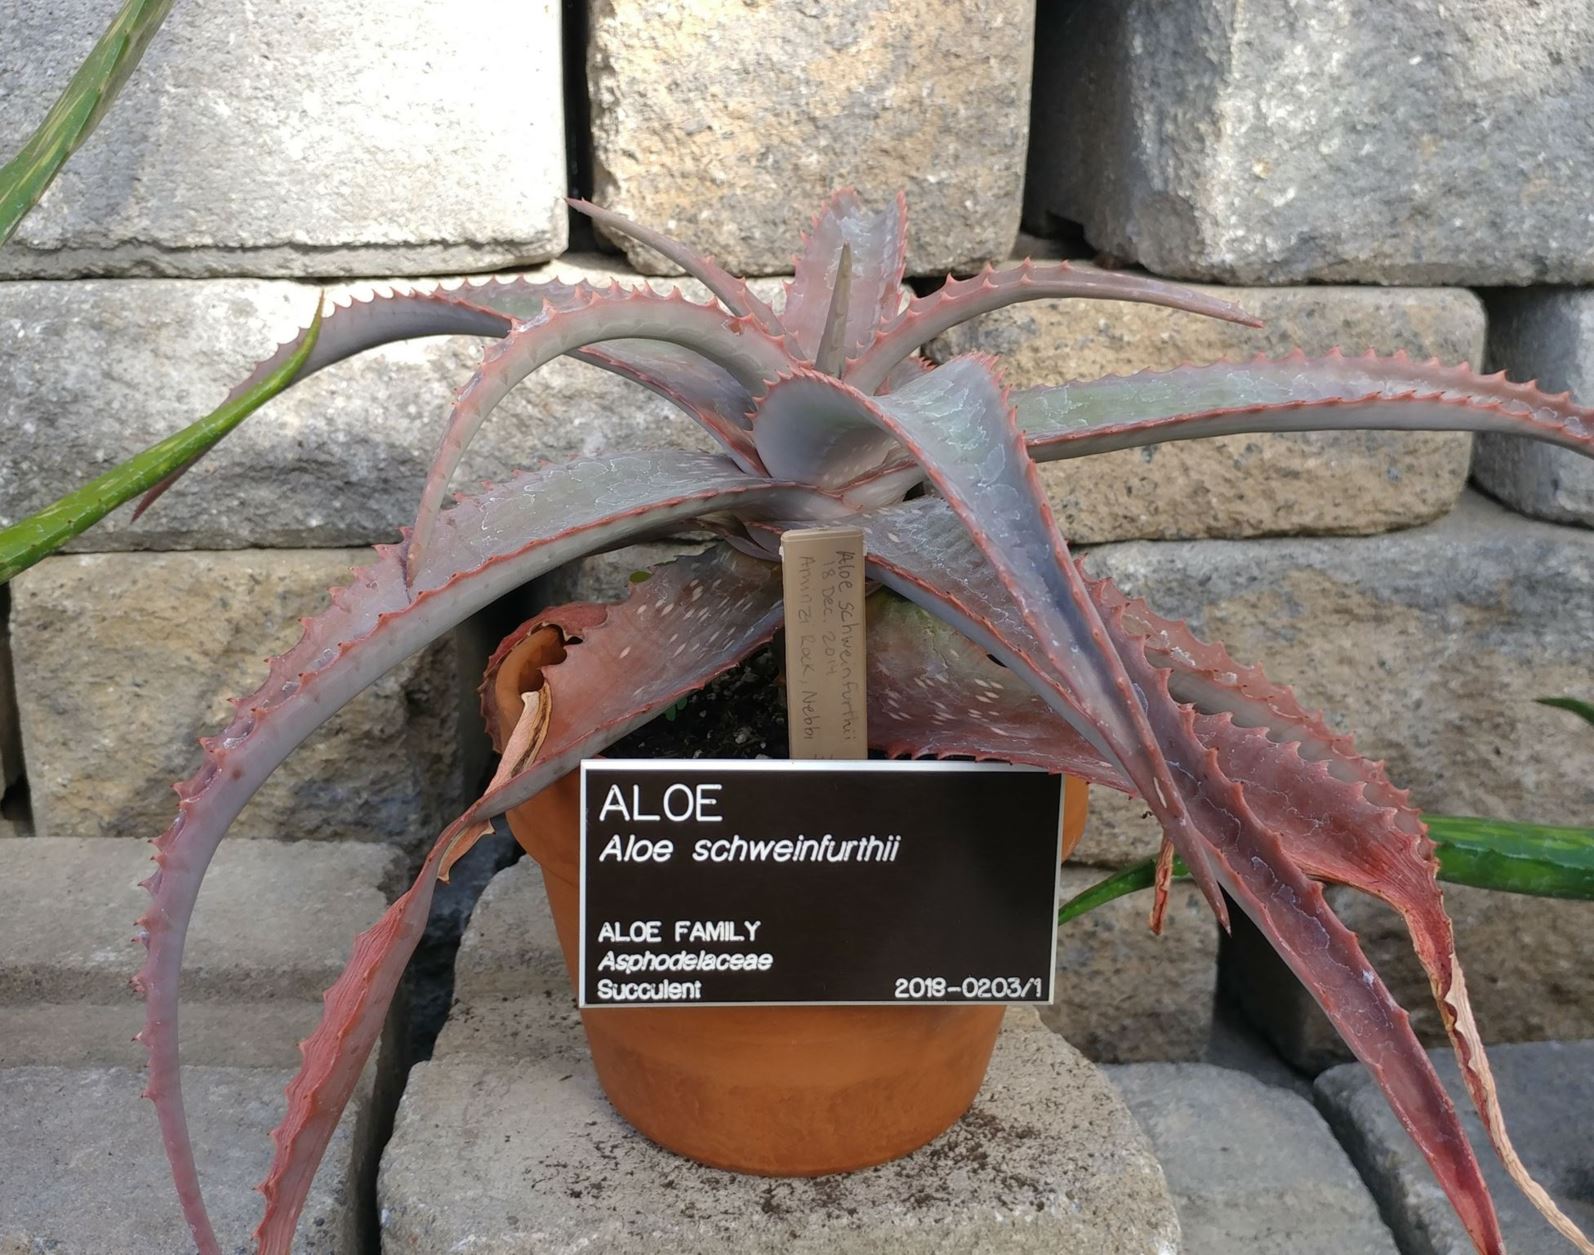 Aloe schweinfurthii - aloe